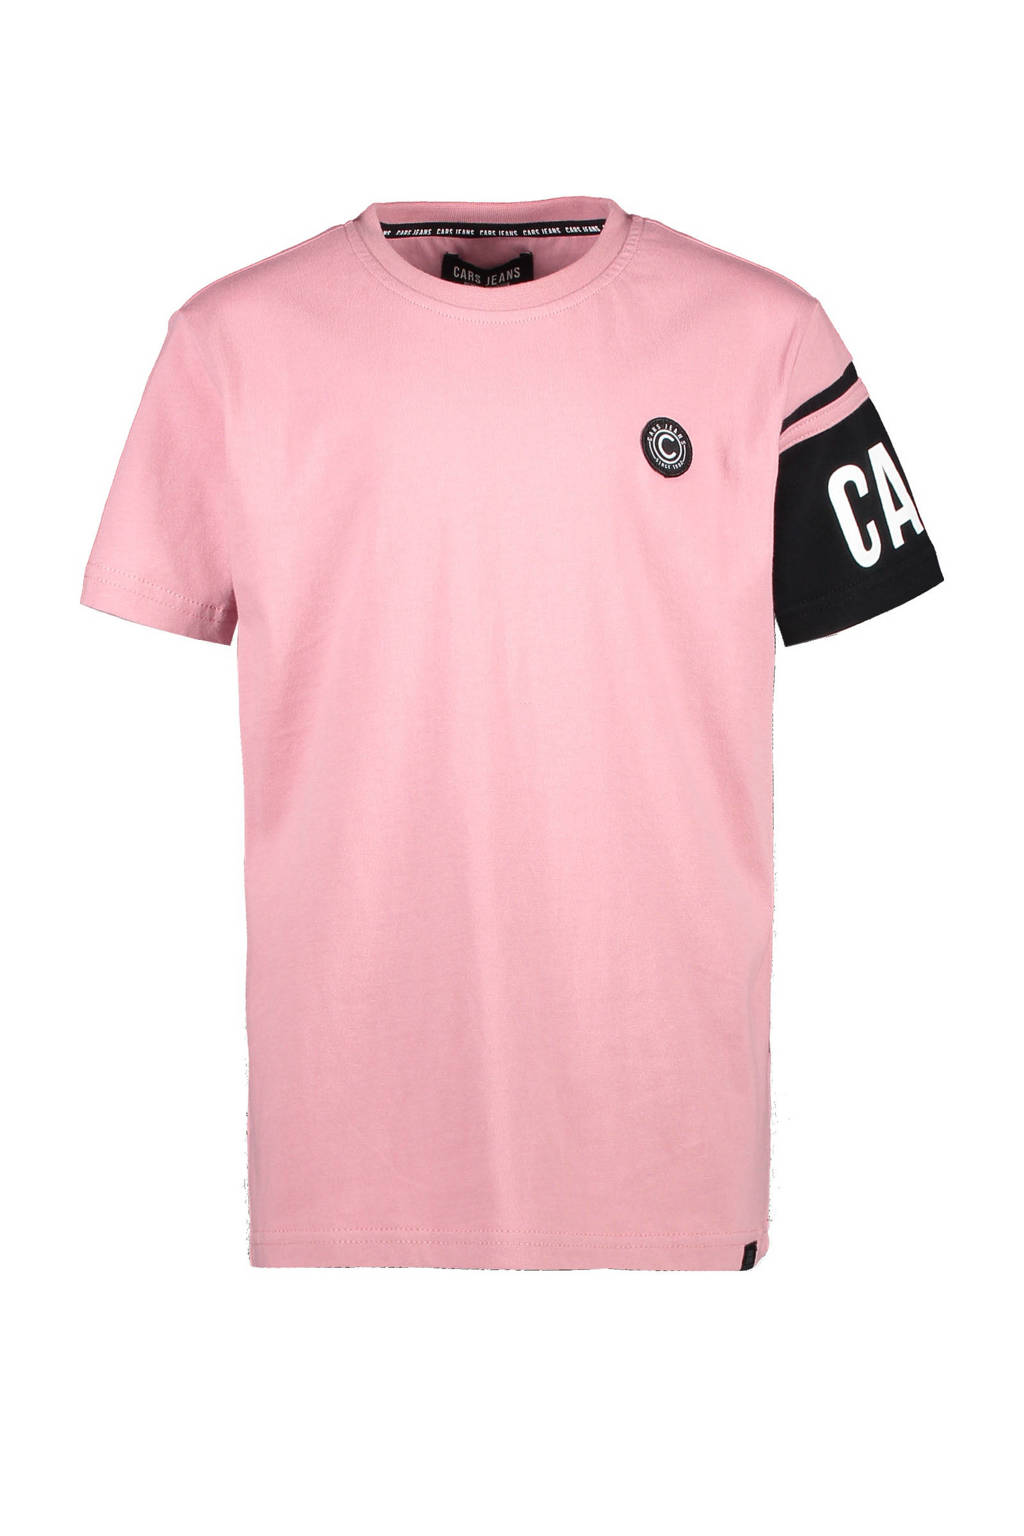 Cars T-shirt Tysar met logo roze/zwart